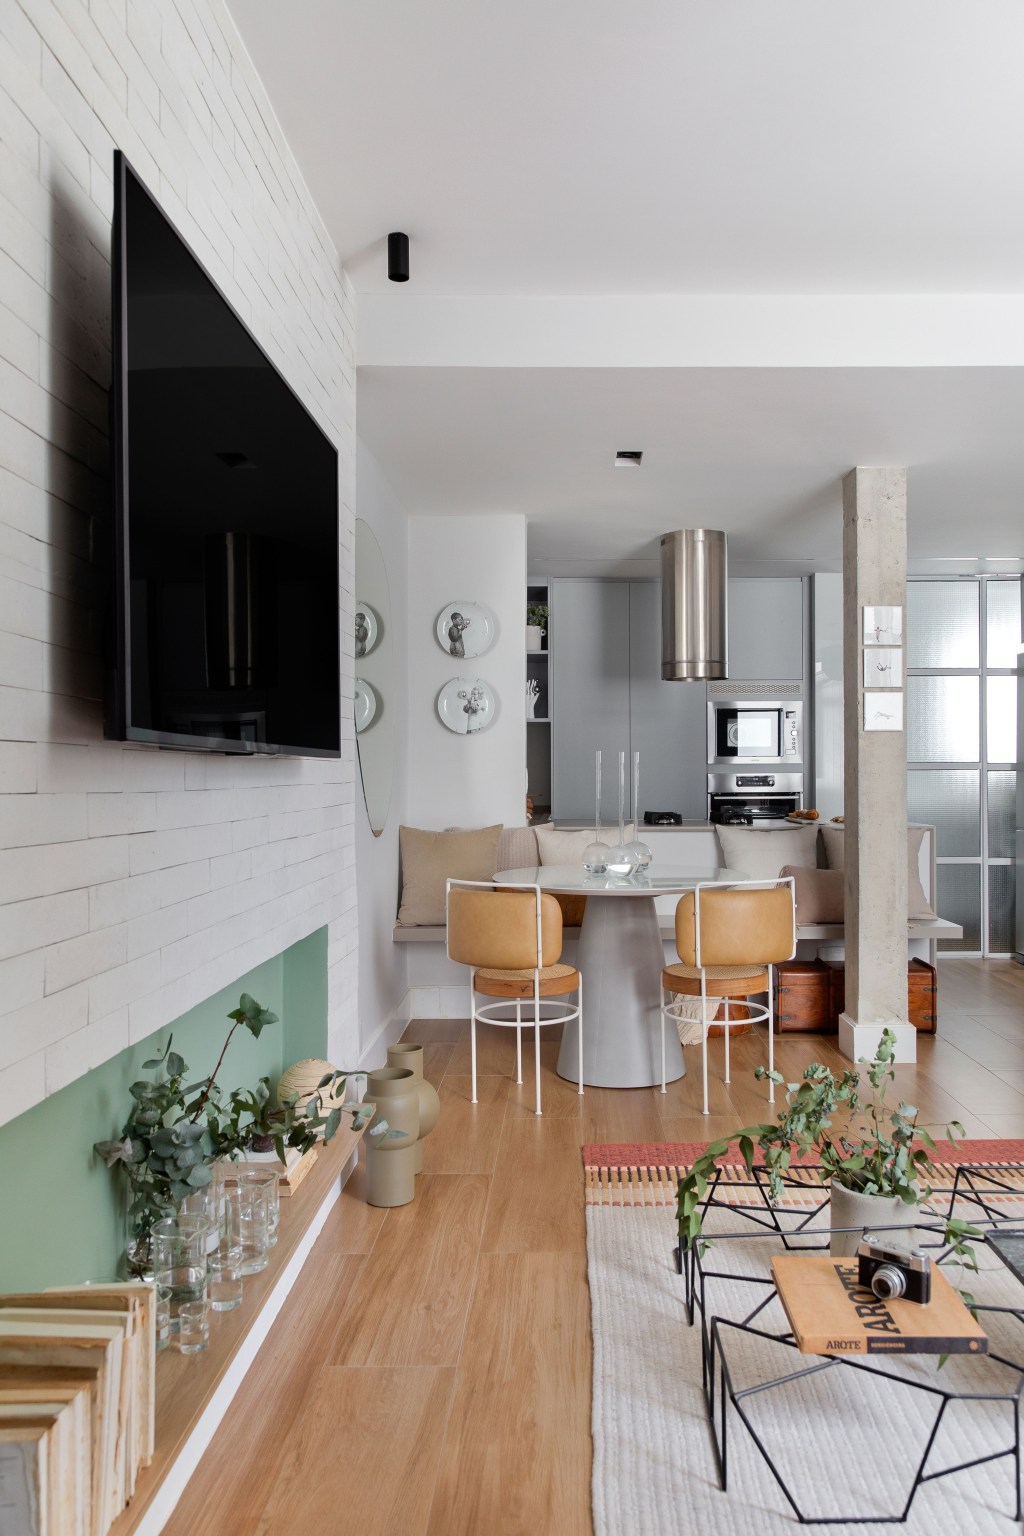 Apê de 60 m² ganha cozinha integrada, duas suítes e lavanderia escondida. Projeto de Sketchlab Arquitetura. Na foto, sala de jantar com mesa redonda e espelho orgânico.